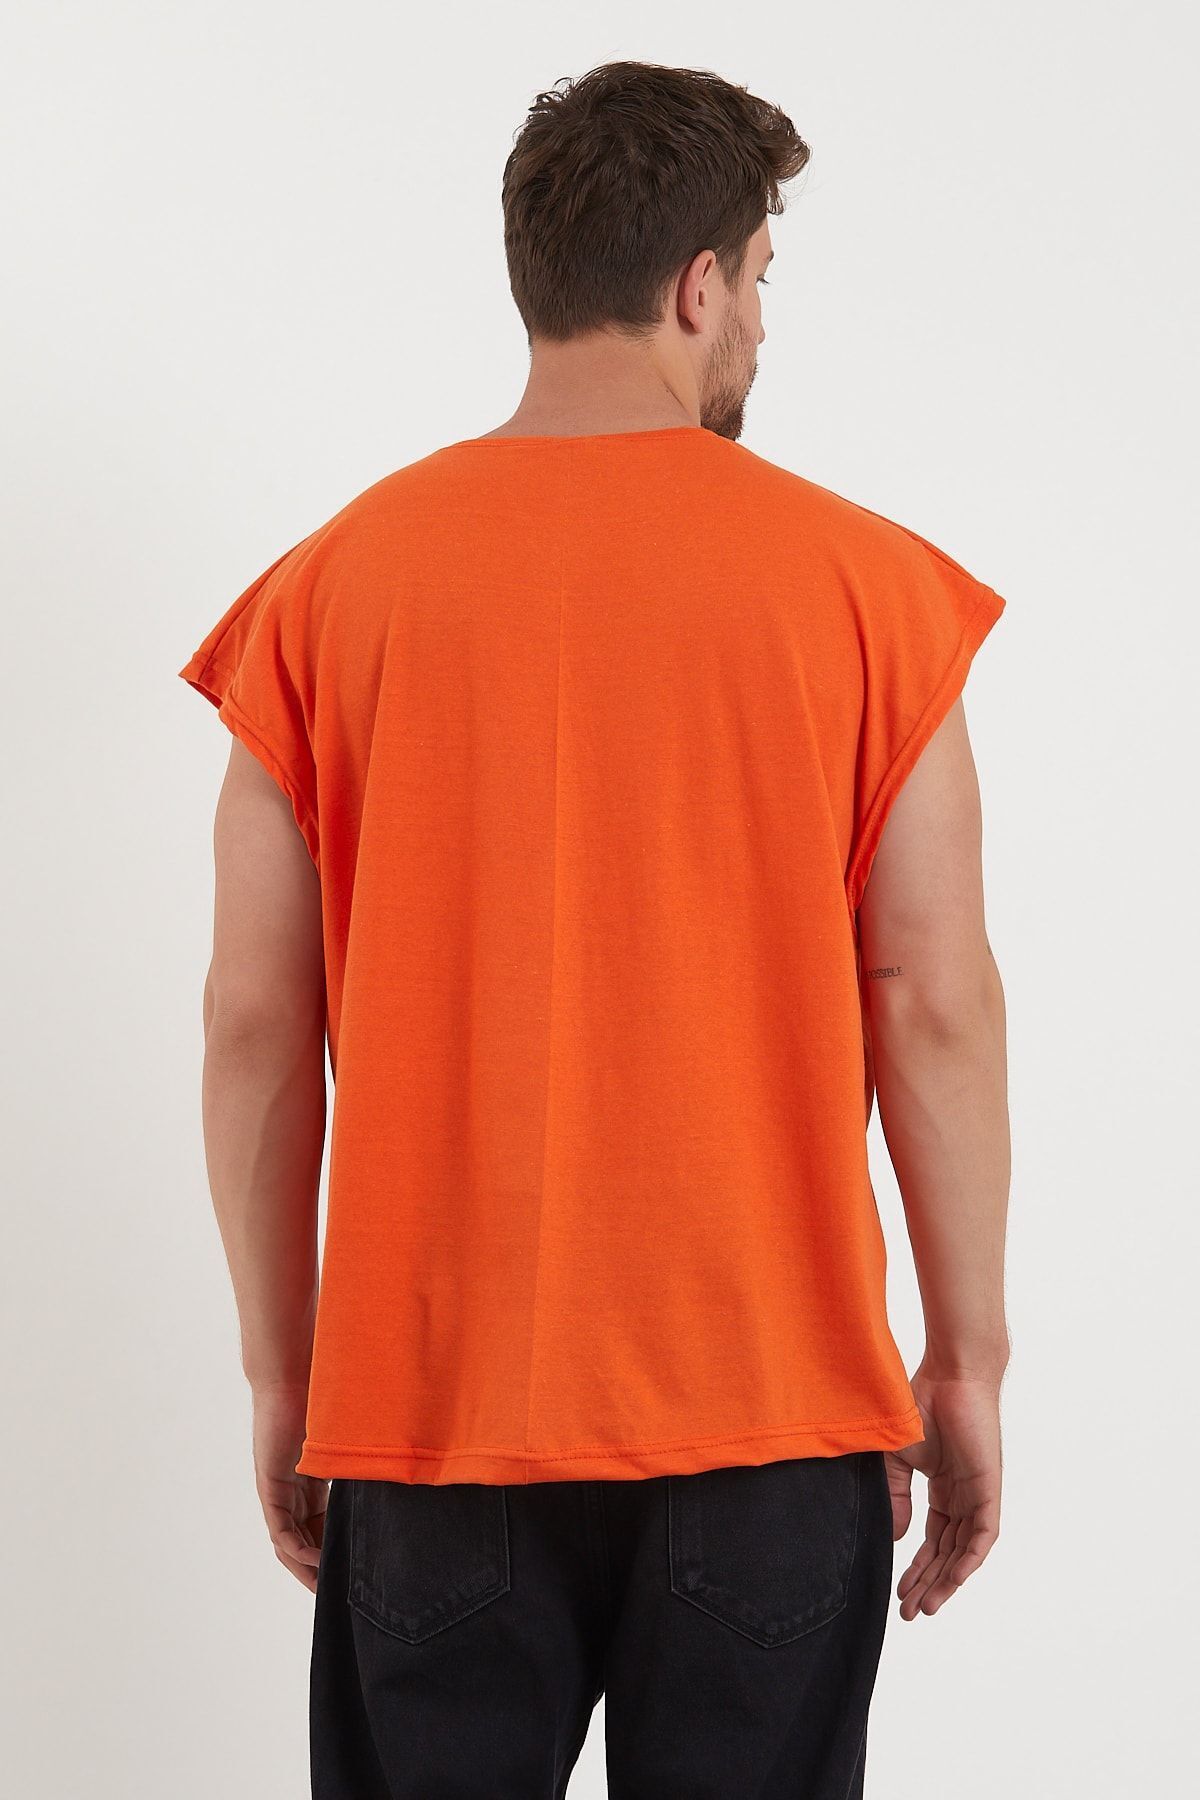 bentillo Turuncu Basic Oversize Atlet T-shirt